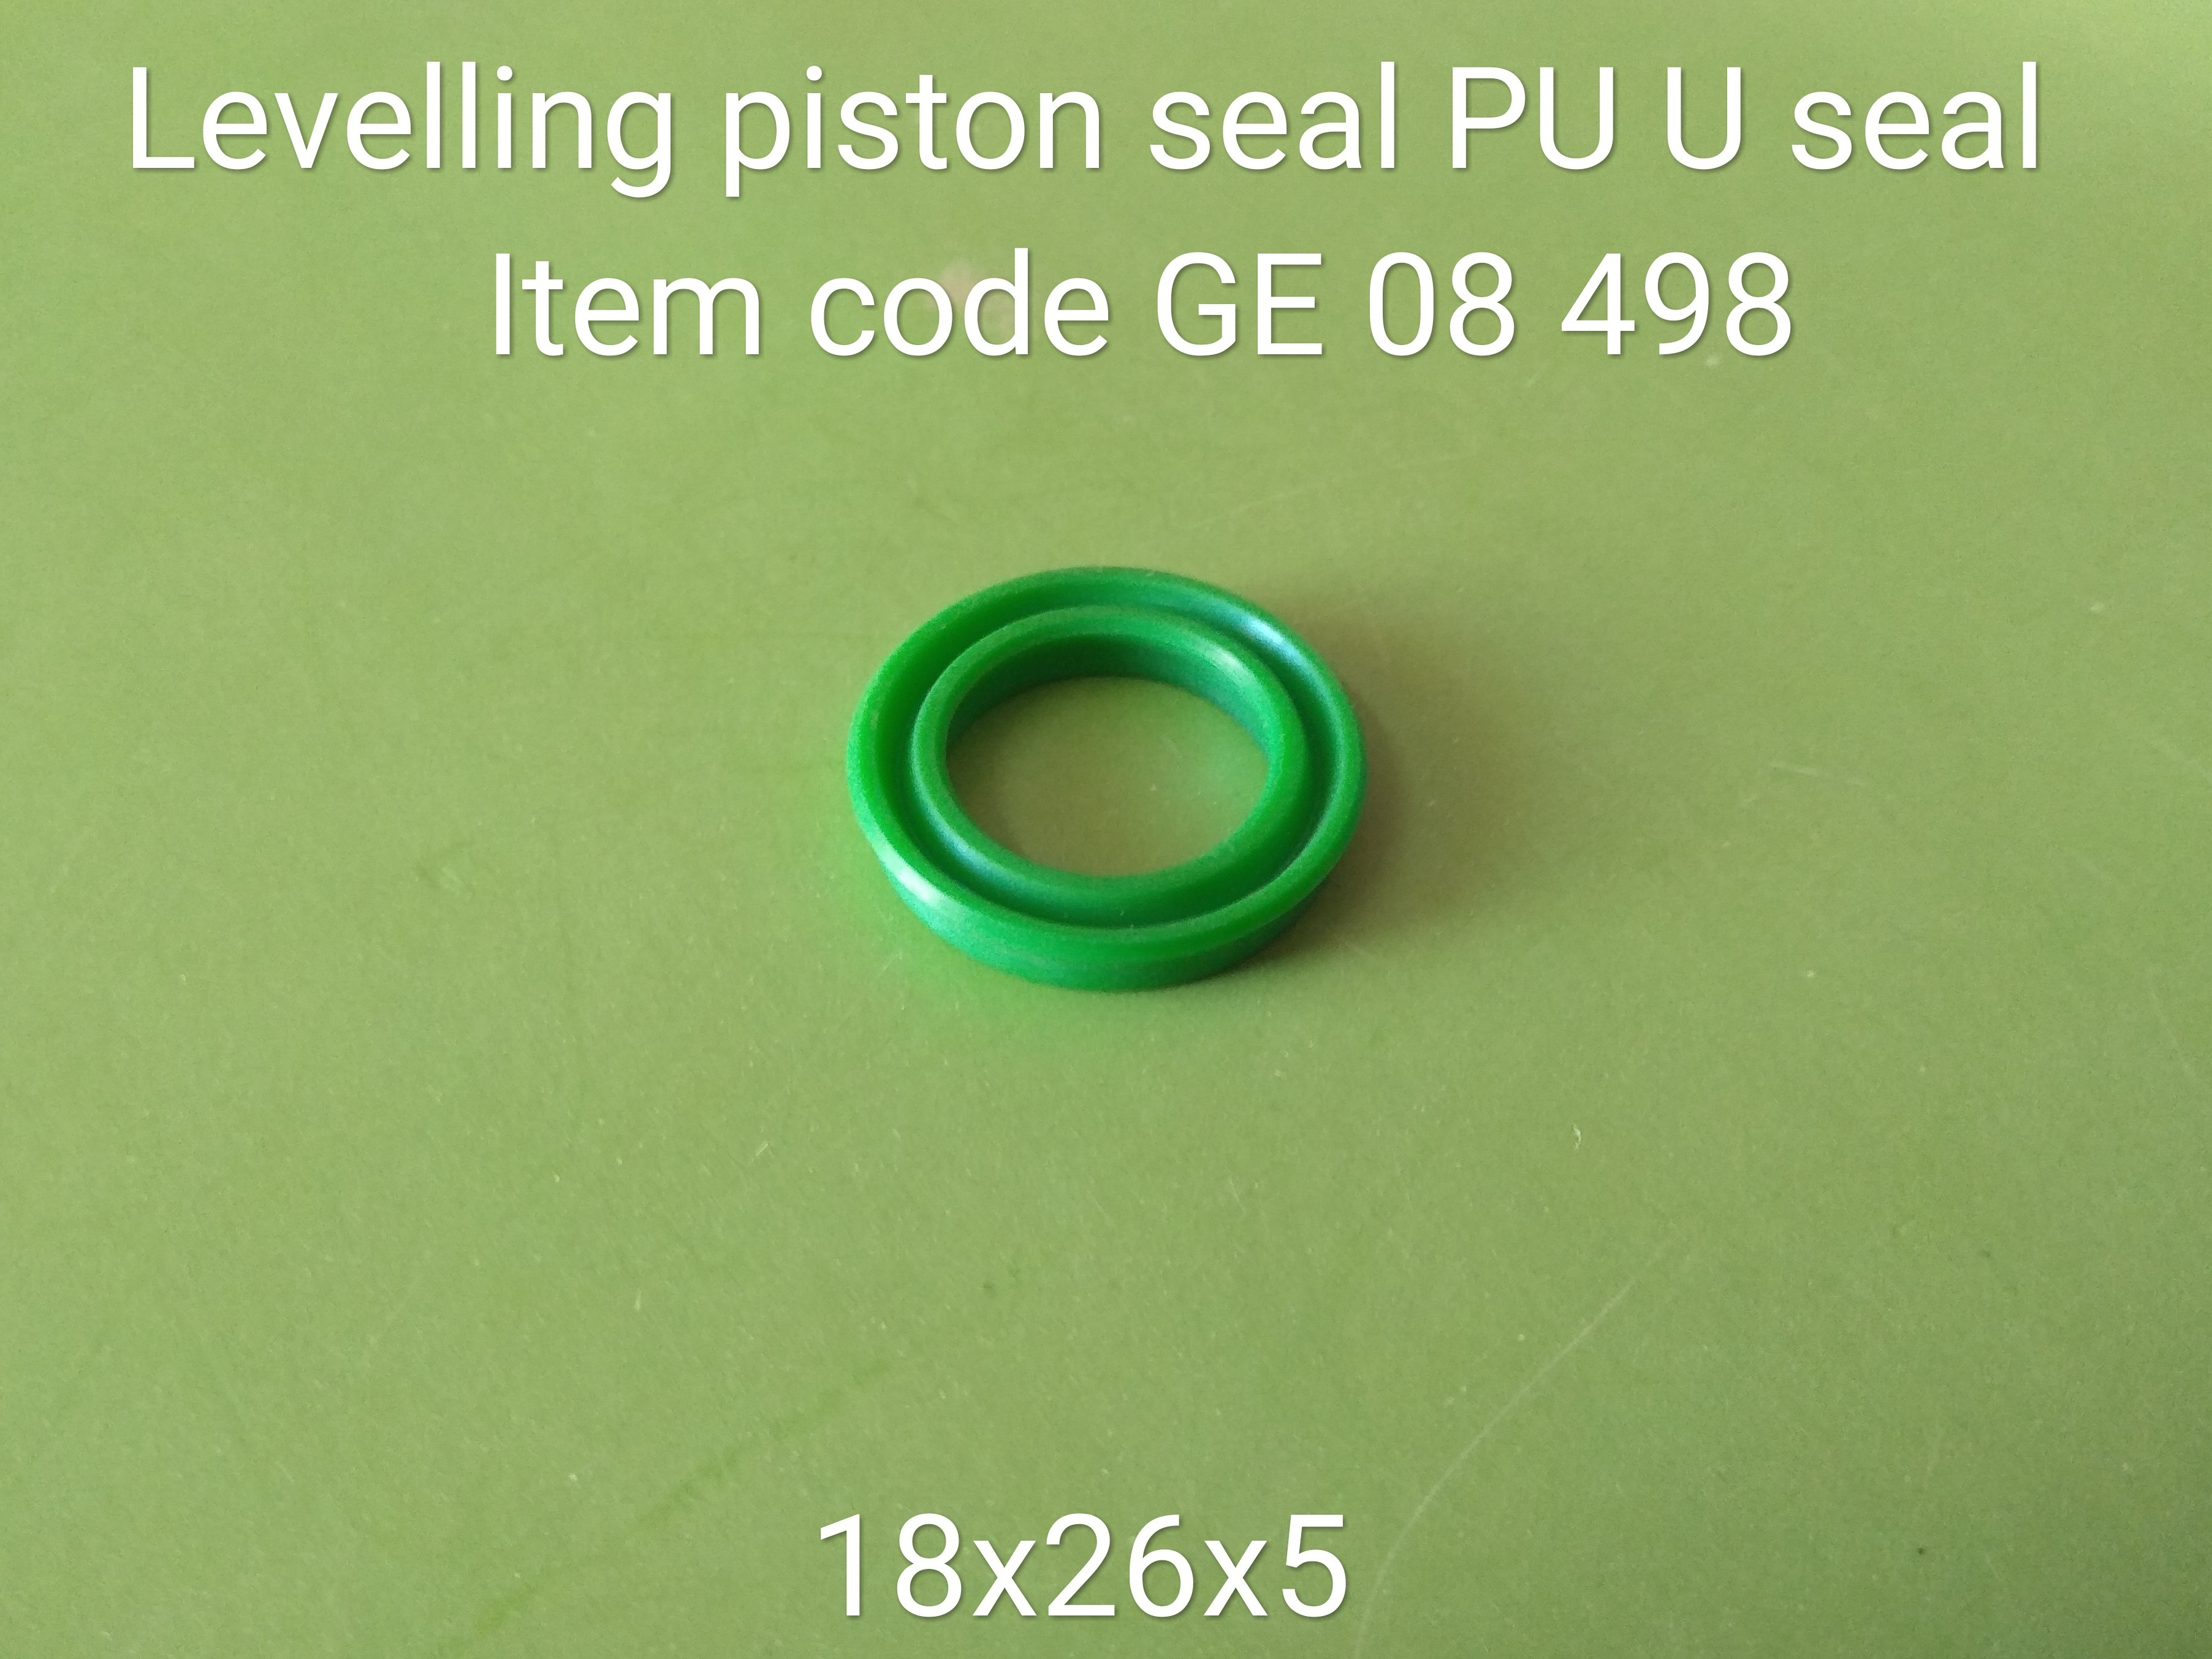 GE_08_498_Levelling_Piston__PU_U_Seal__1_18.jpg